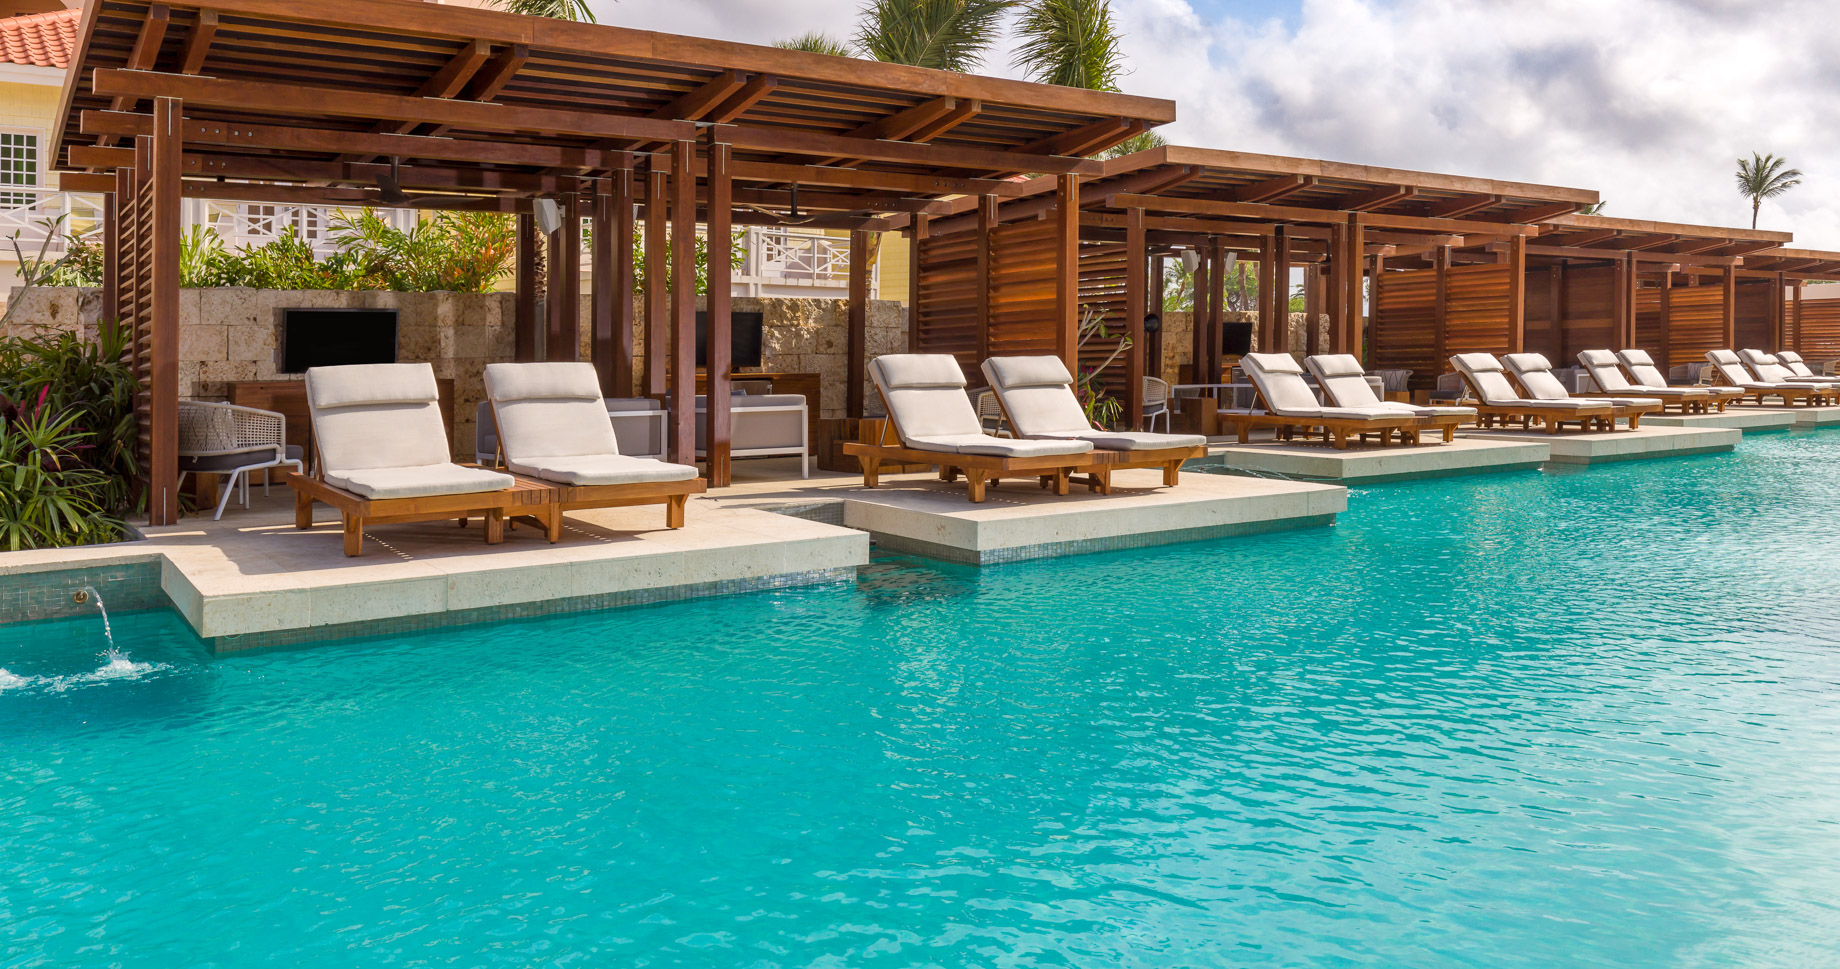 Hyatt Regency Aruba Resort & Casino – Noord, Aruba – Pool Deck Cabanas